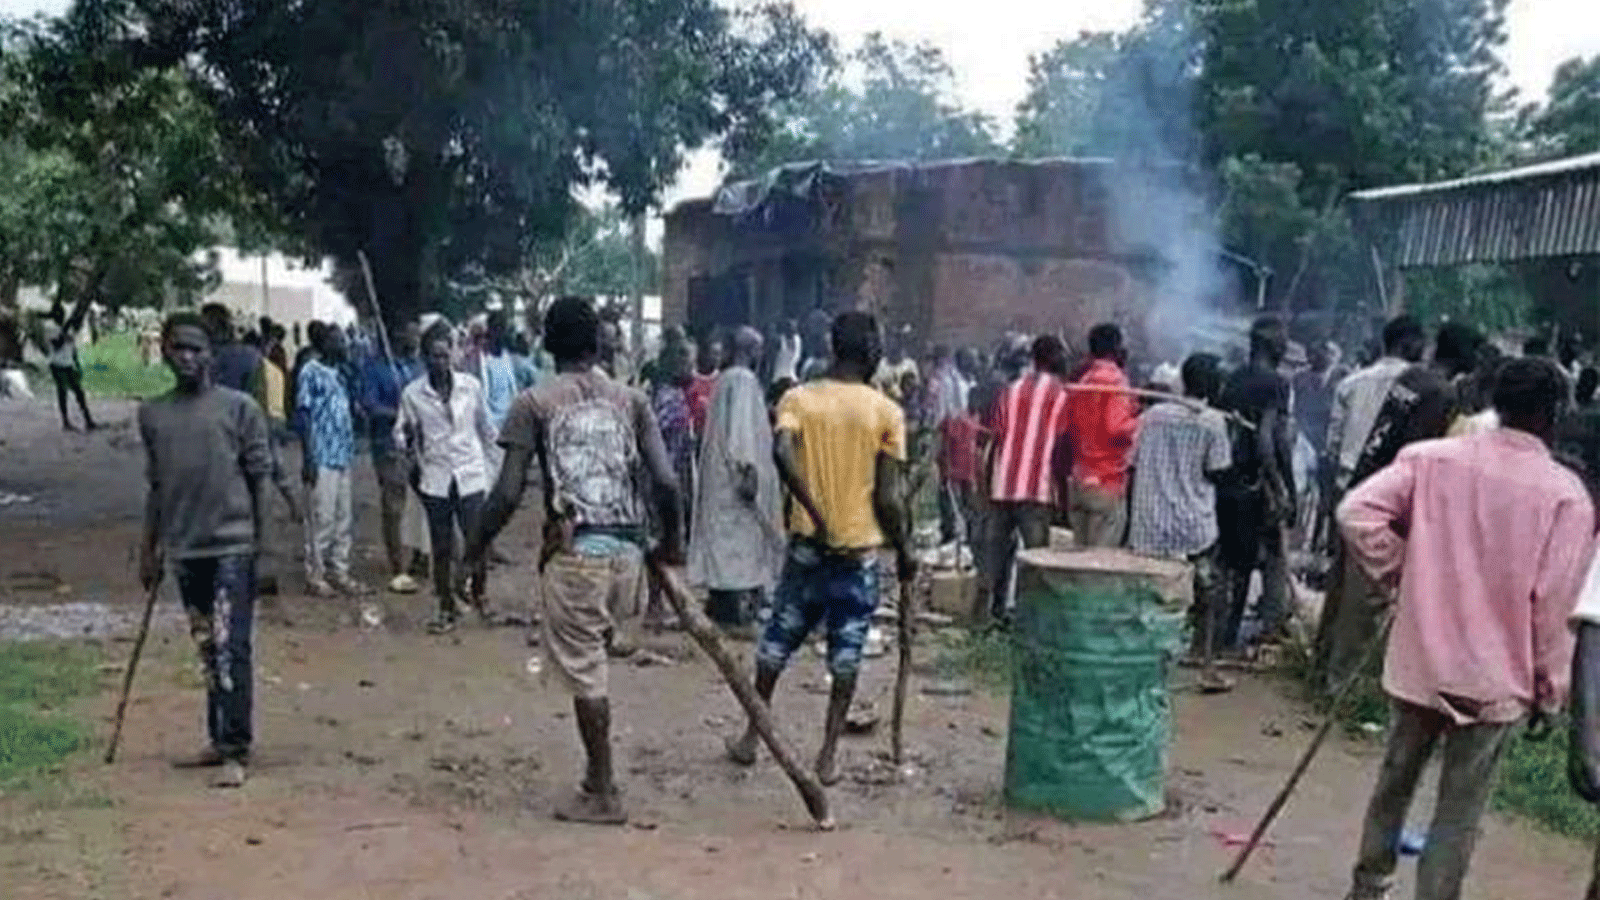 سودانيون يجتمعون وسط تجدد الاشتباكات العرقية في الروصيرص بولاية النيل الأزرق جنوب السودان